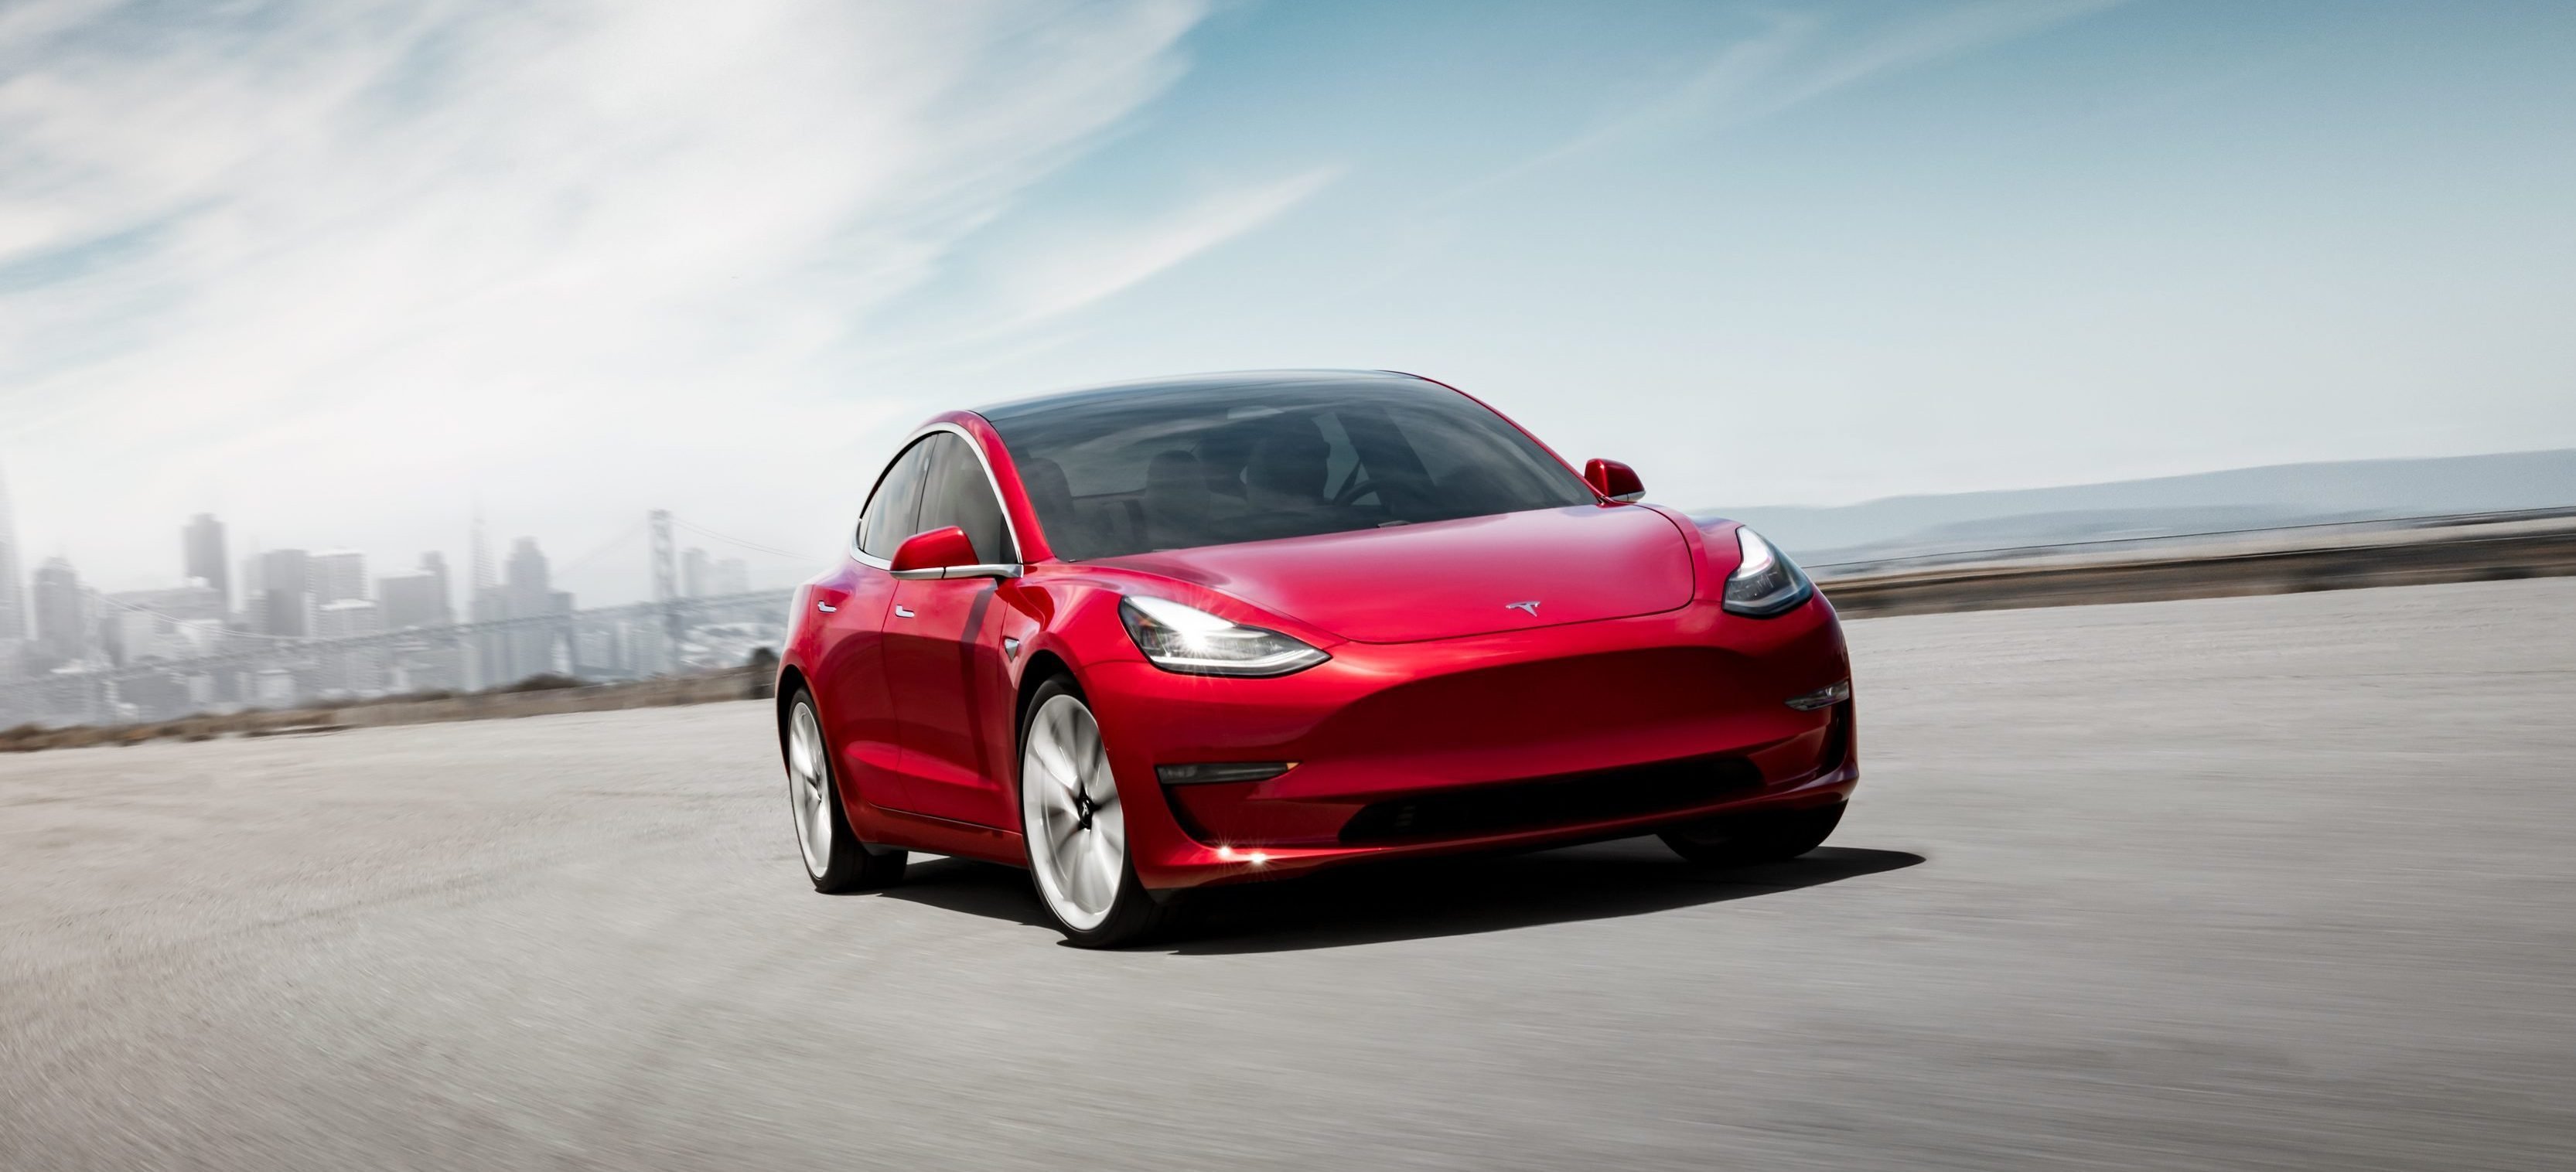 Ceny na Model 3 stały się jeszcze bliżej do obiecanym 35 000 dolarów